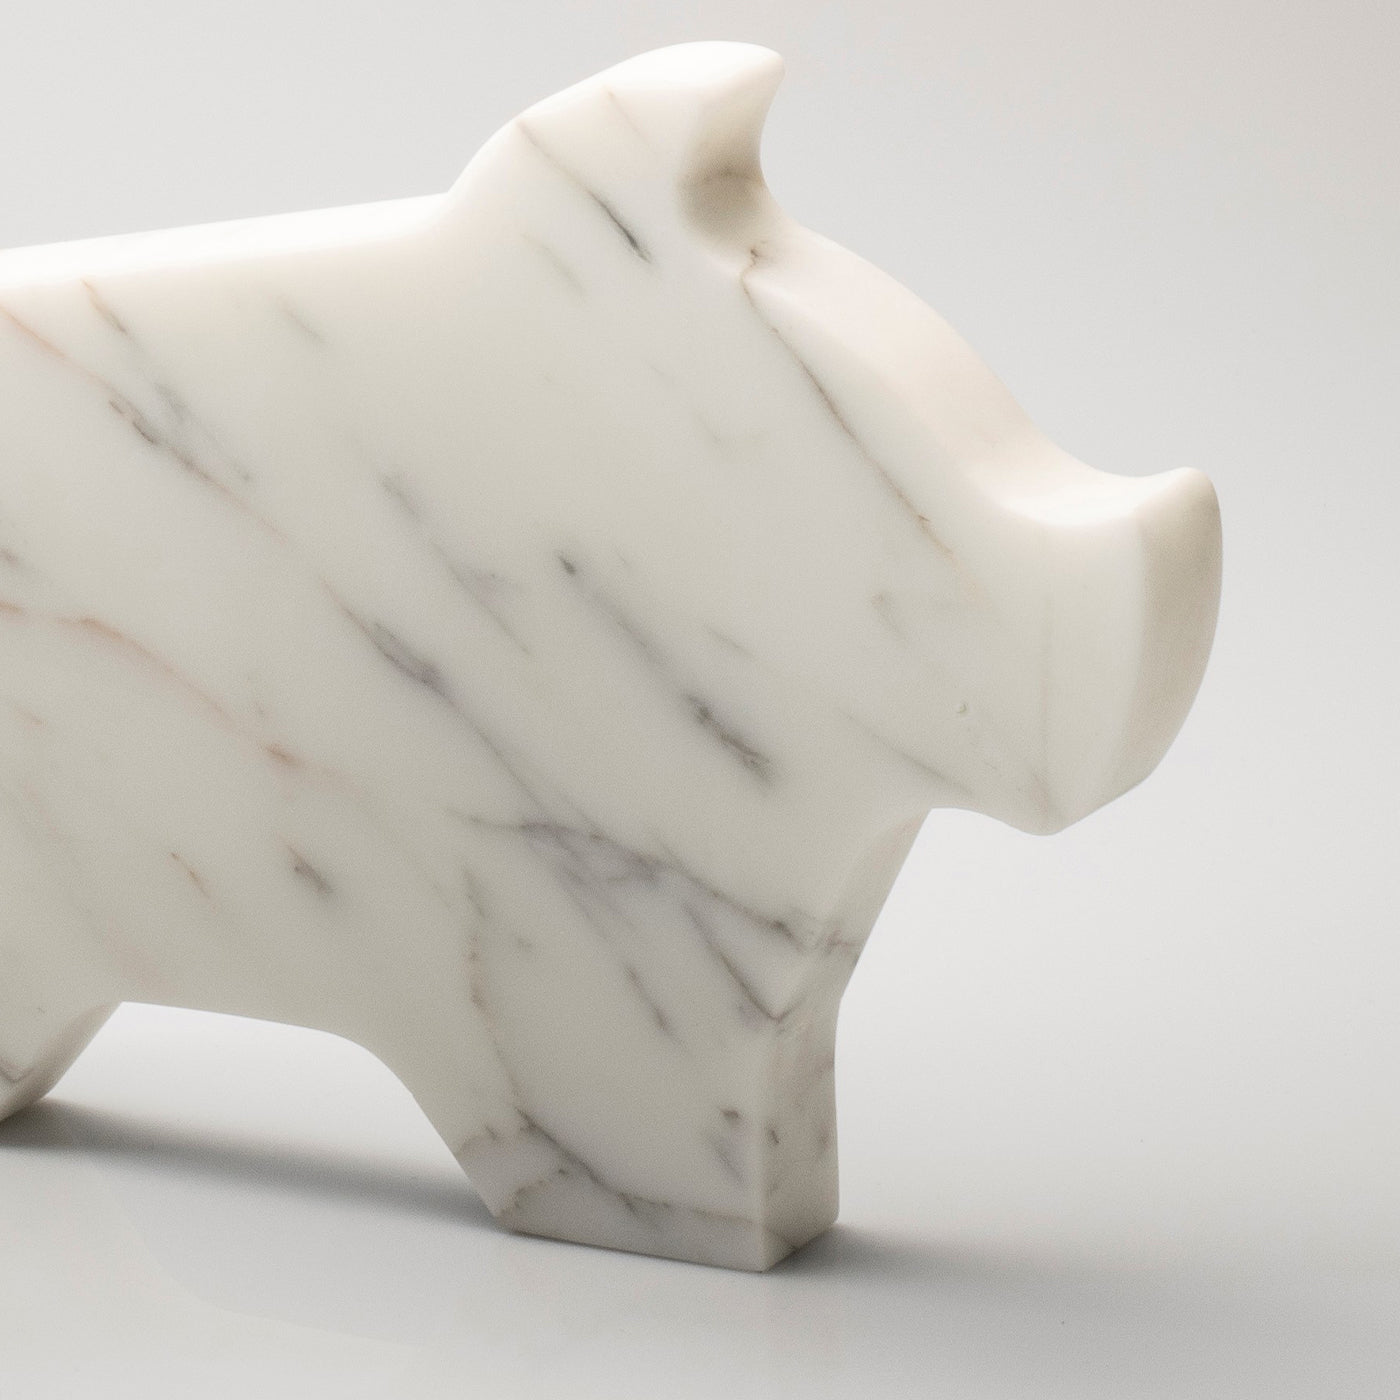 Grande statuette blanche de cochon par Alessandra Grasso - Vue alternative 1